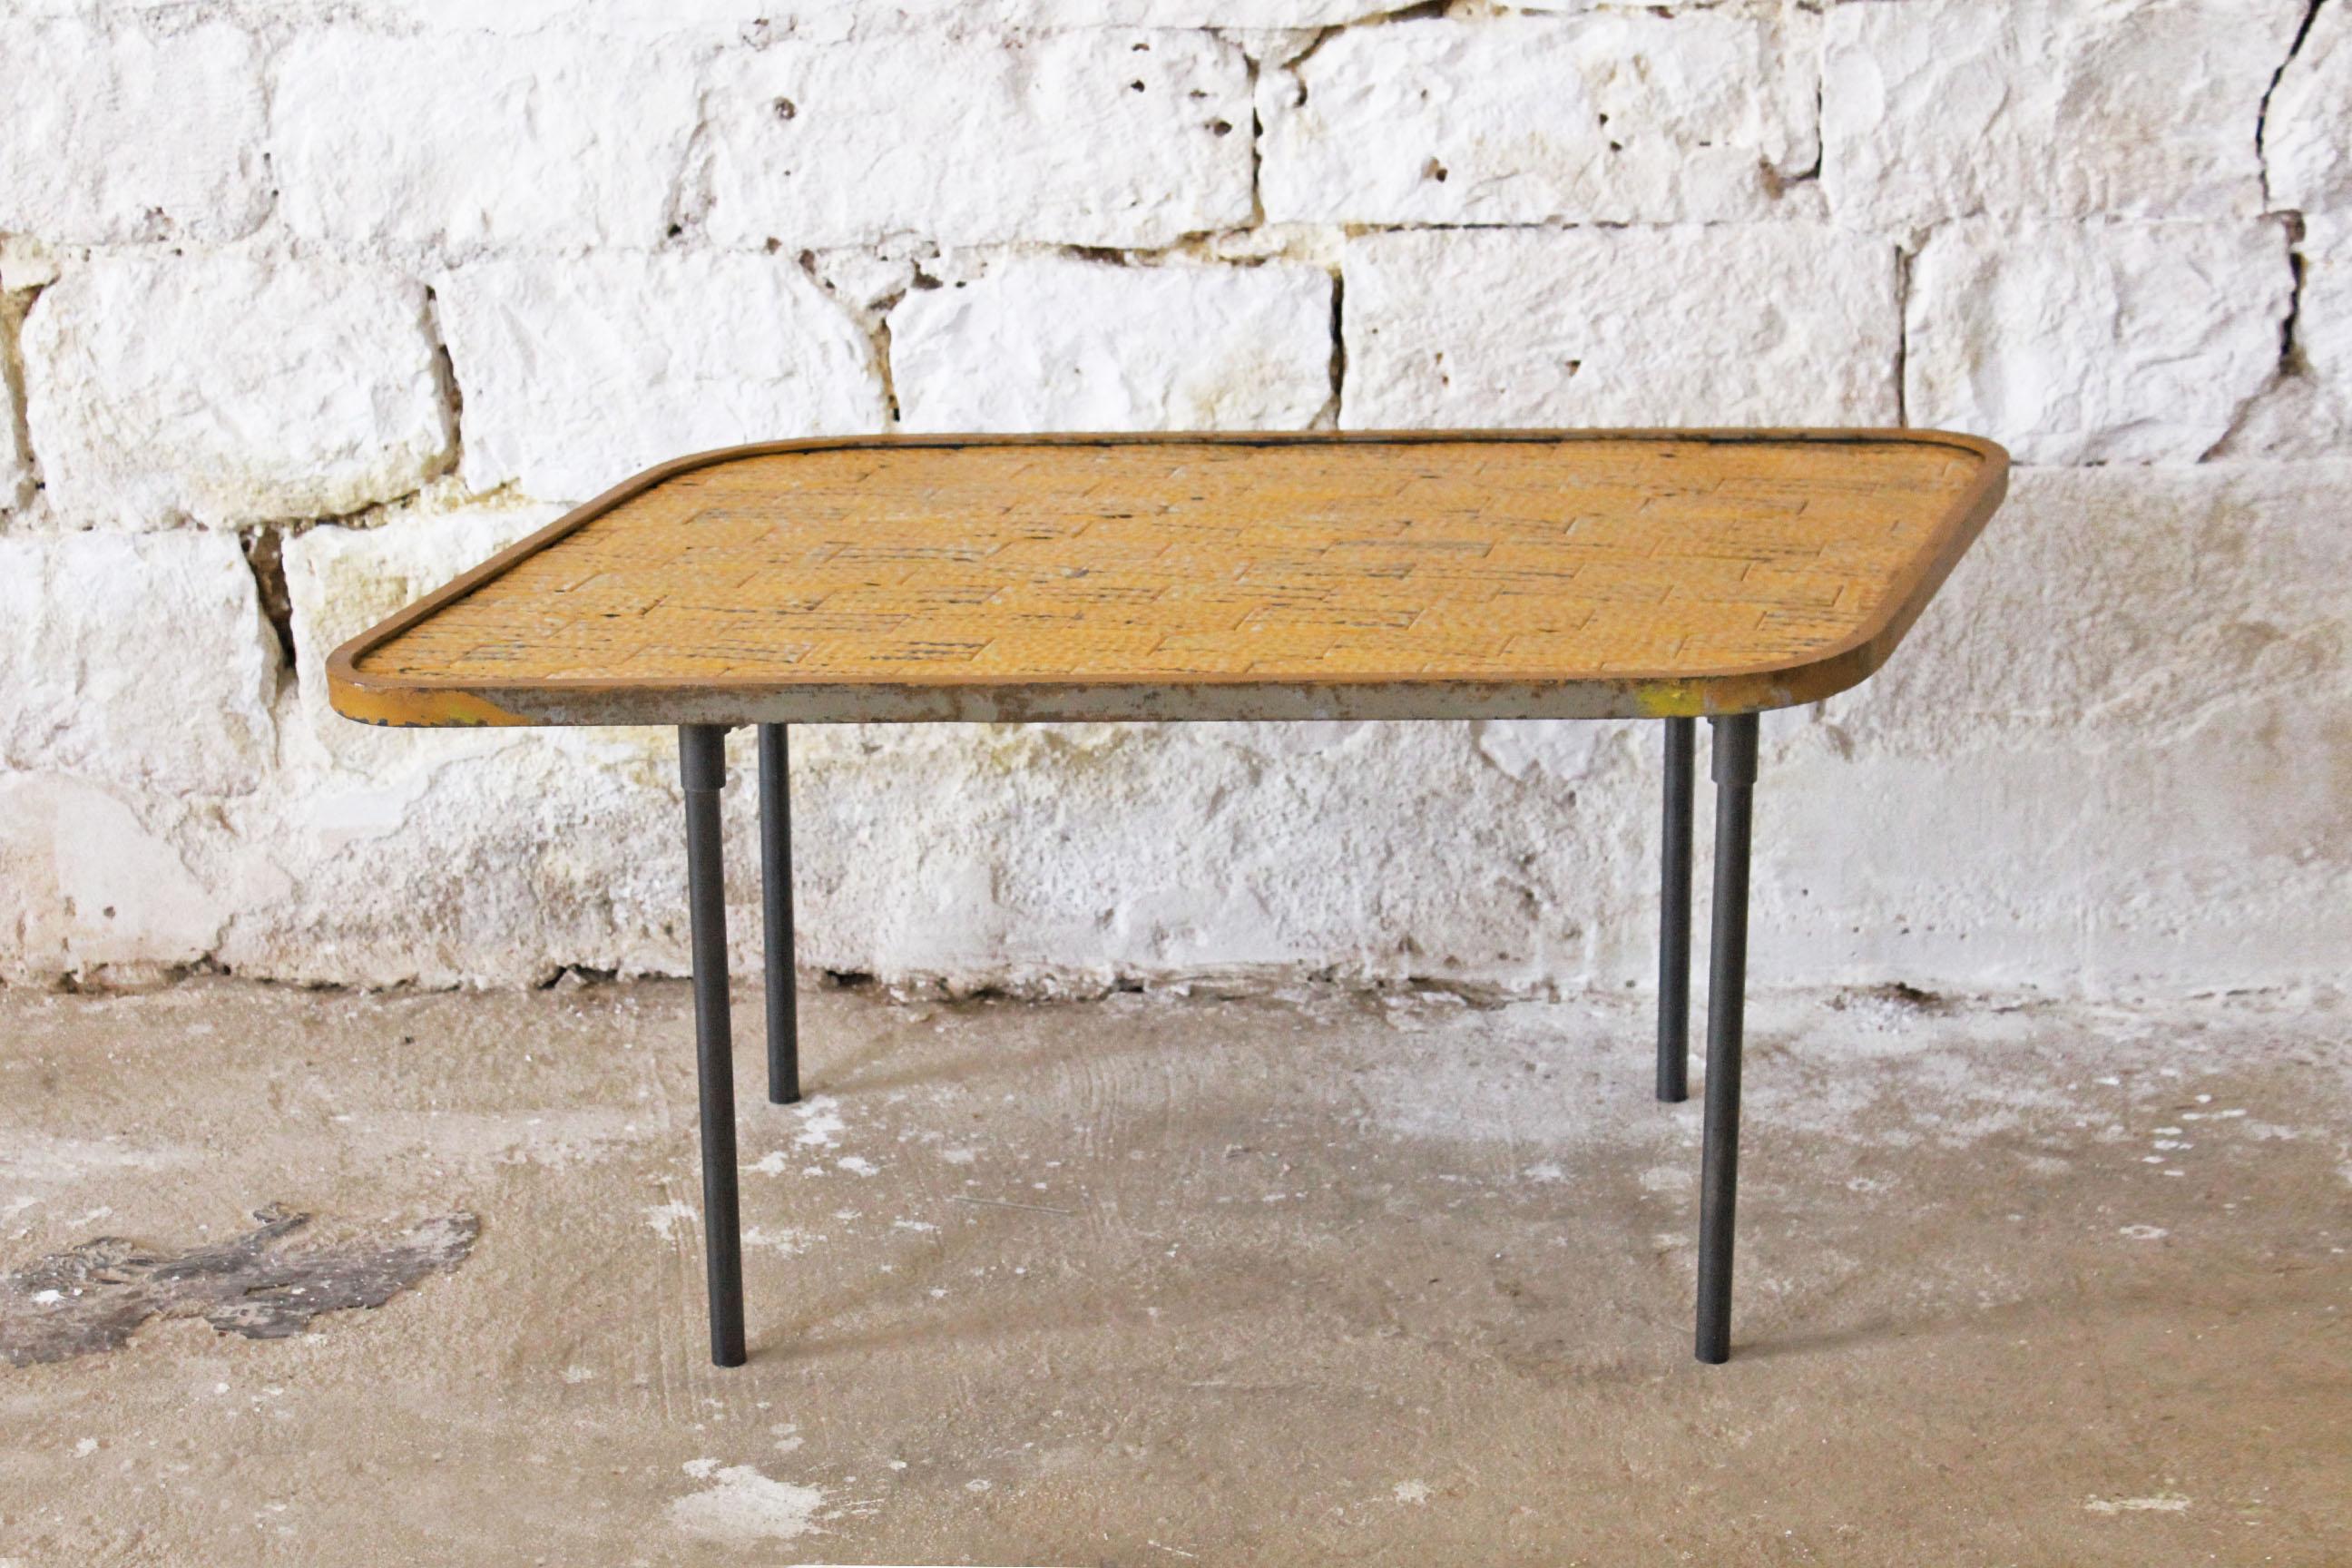 Table basse vintage jaune carreaux et acier, Italie années 1950.
Une table basse jaune des années 1950. Dessus en carreaux de céramique jaune et structure en fer. En très bonnes conditions. Les pieds peuvent être retirés pour la livraison. Fabriqué